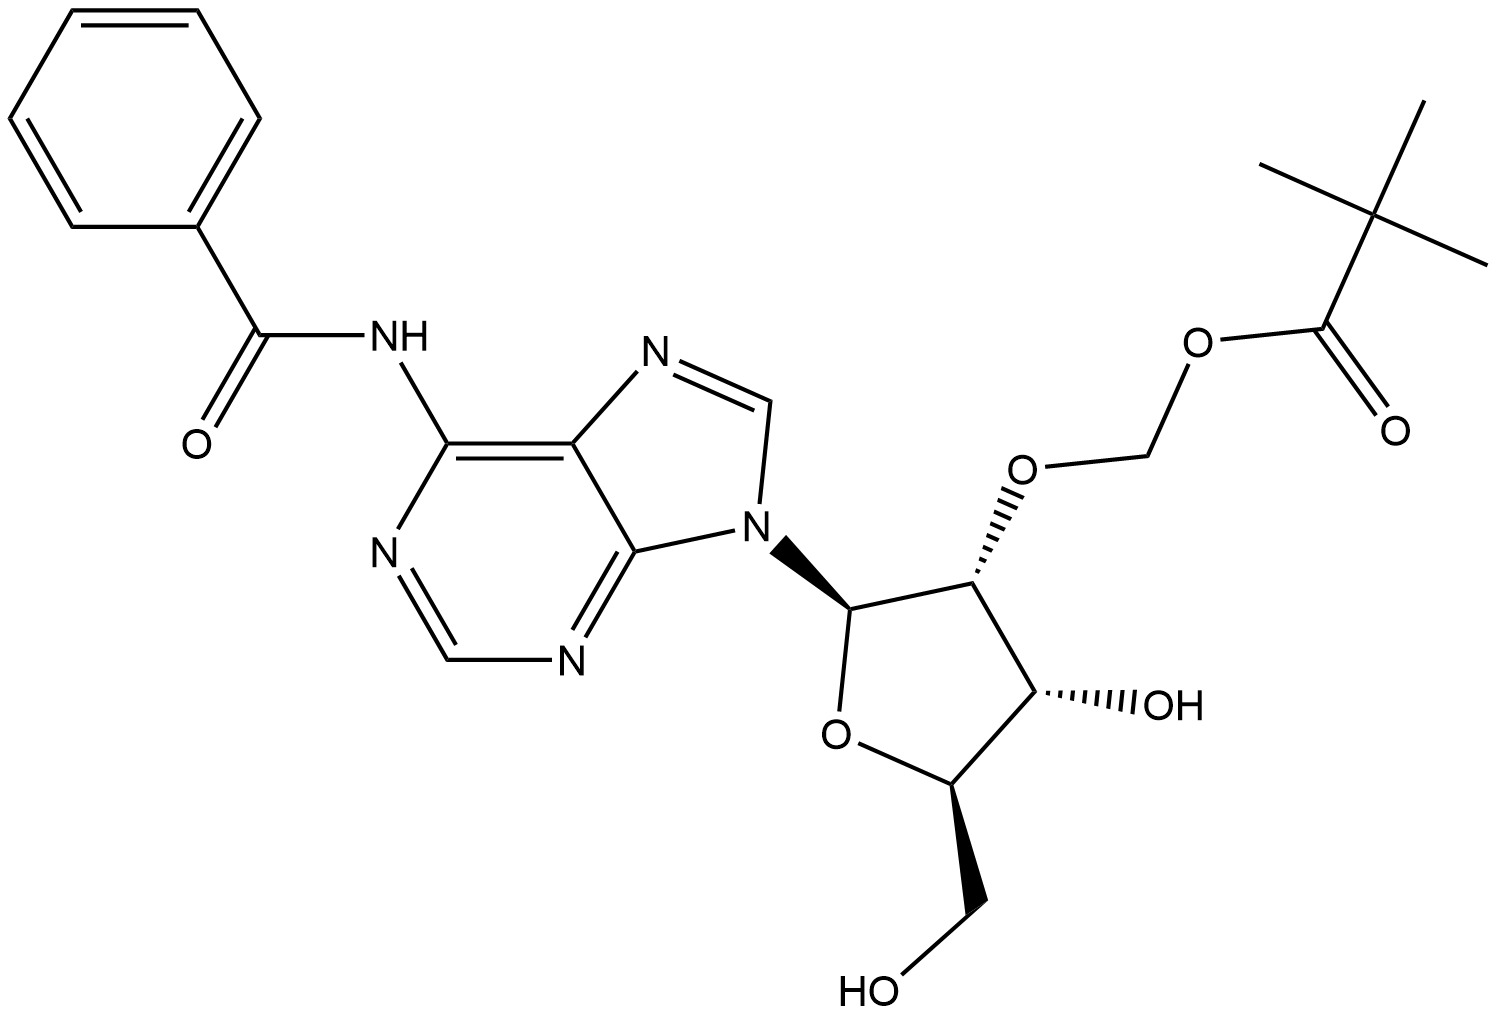 2842847-62-3 (((2R,3R,4R,5R)-2-(6-benzamido-9H-purin-9-yl)-4-hydroxy-5-(hydroxymethyl)tetrahydrofuran-3-yl)oxy)methyl pivalate